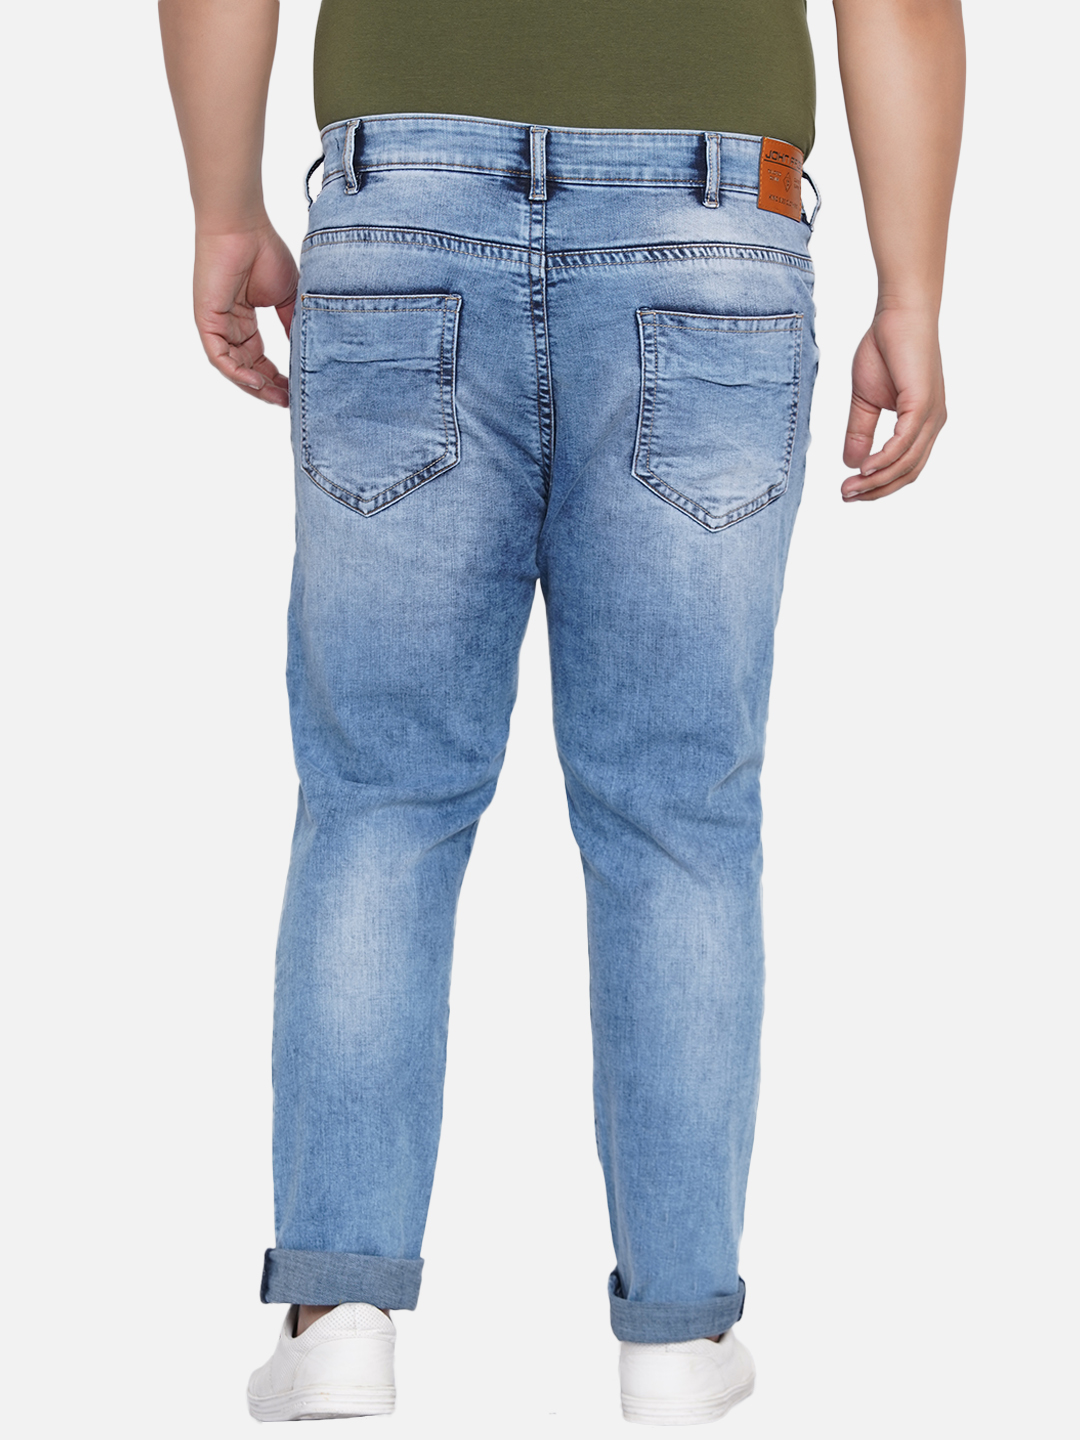 bottomwear/jeans/JPJ12200/jpj12200-5.jpg